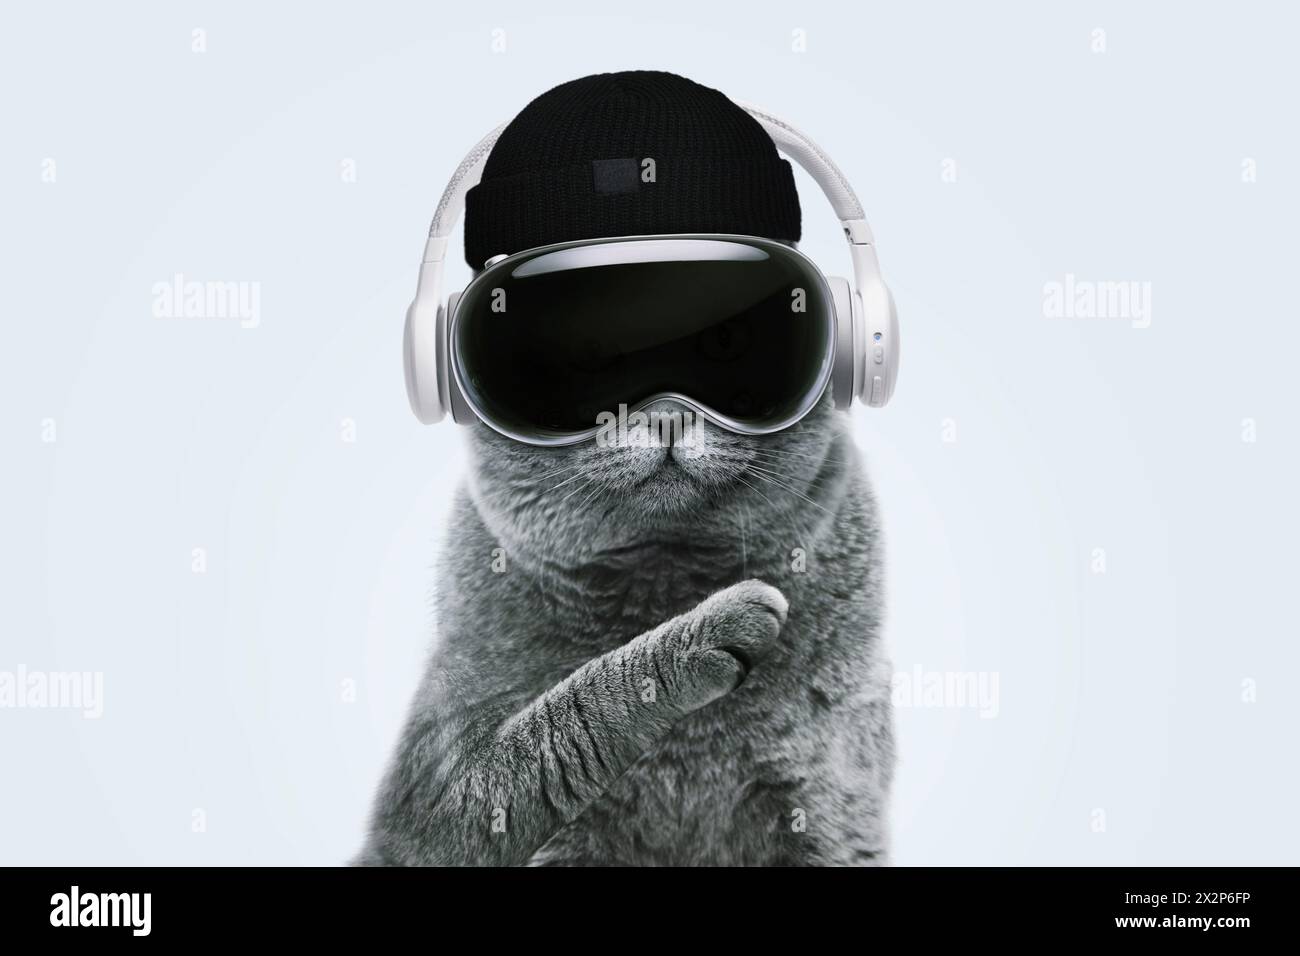 Bellissimo divertente Hipster Cat con occhiali per realtà virtuale, cappelli e supporti per cuffie in maglia e tecnologia rivoluzionaria su Una pasta blu Foto Stock